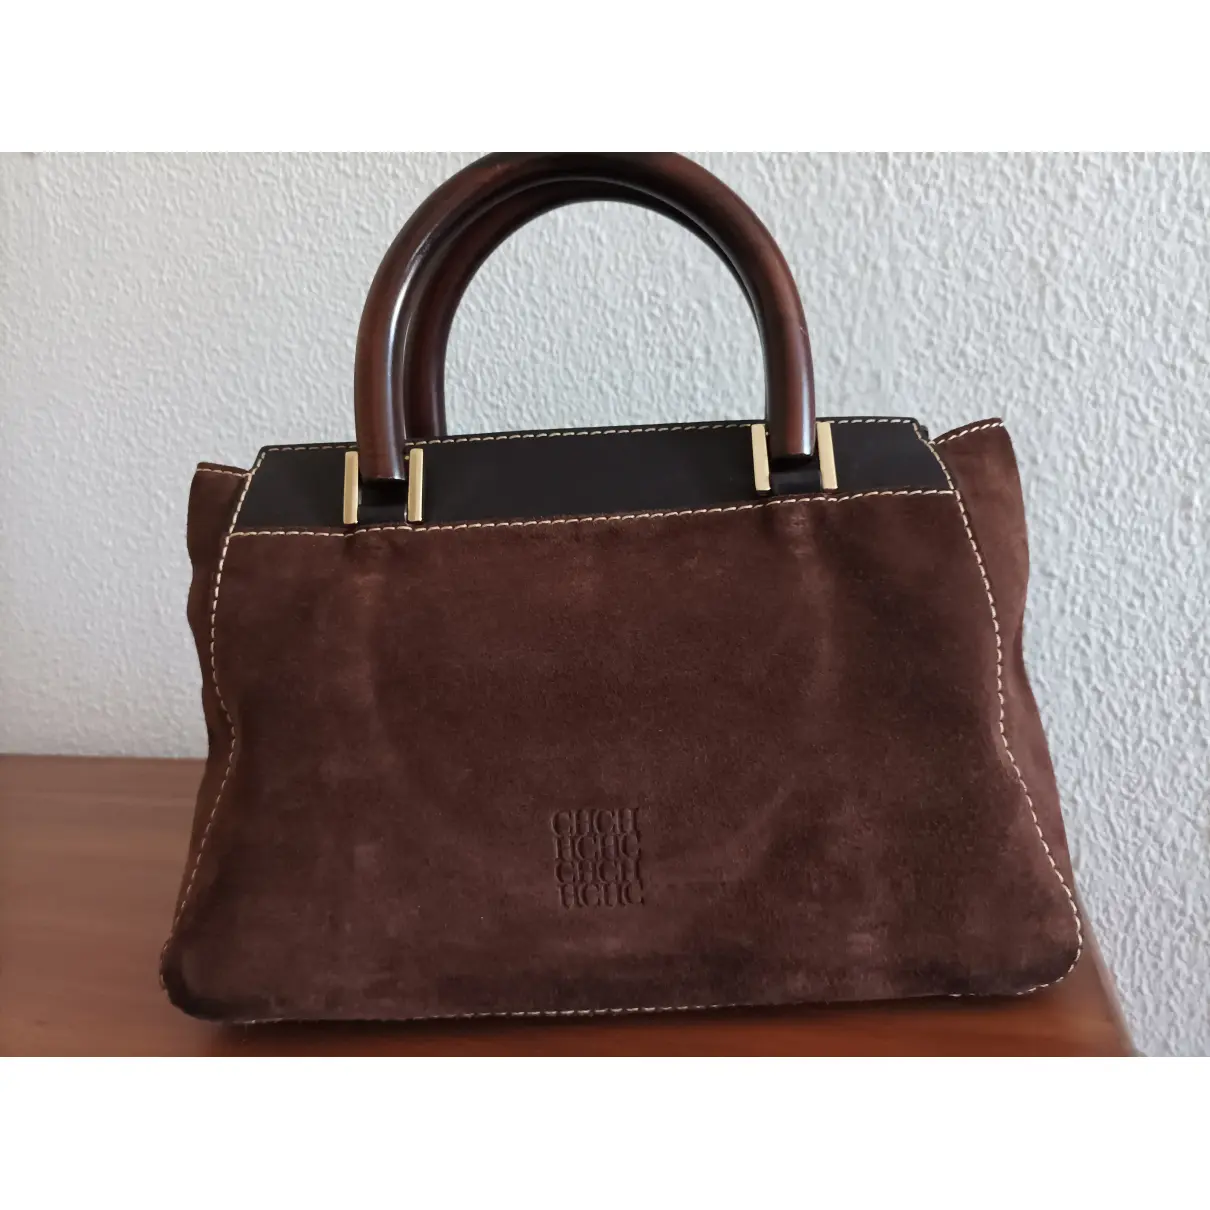 Buy Carolina Herrera Handbag online - Vintage